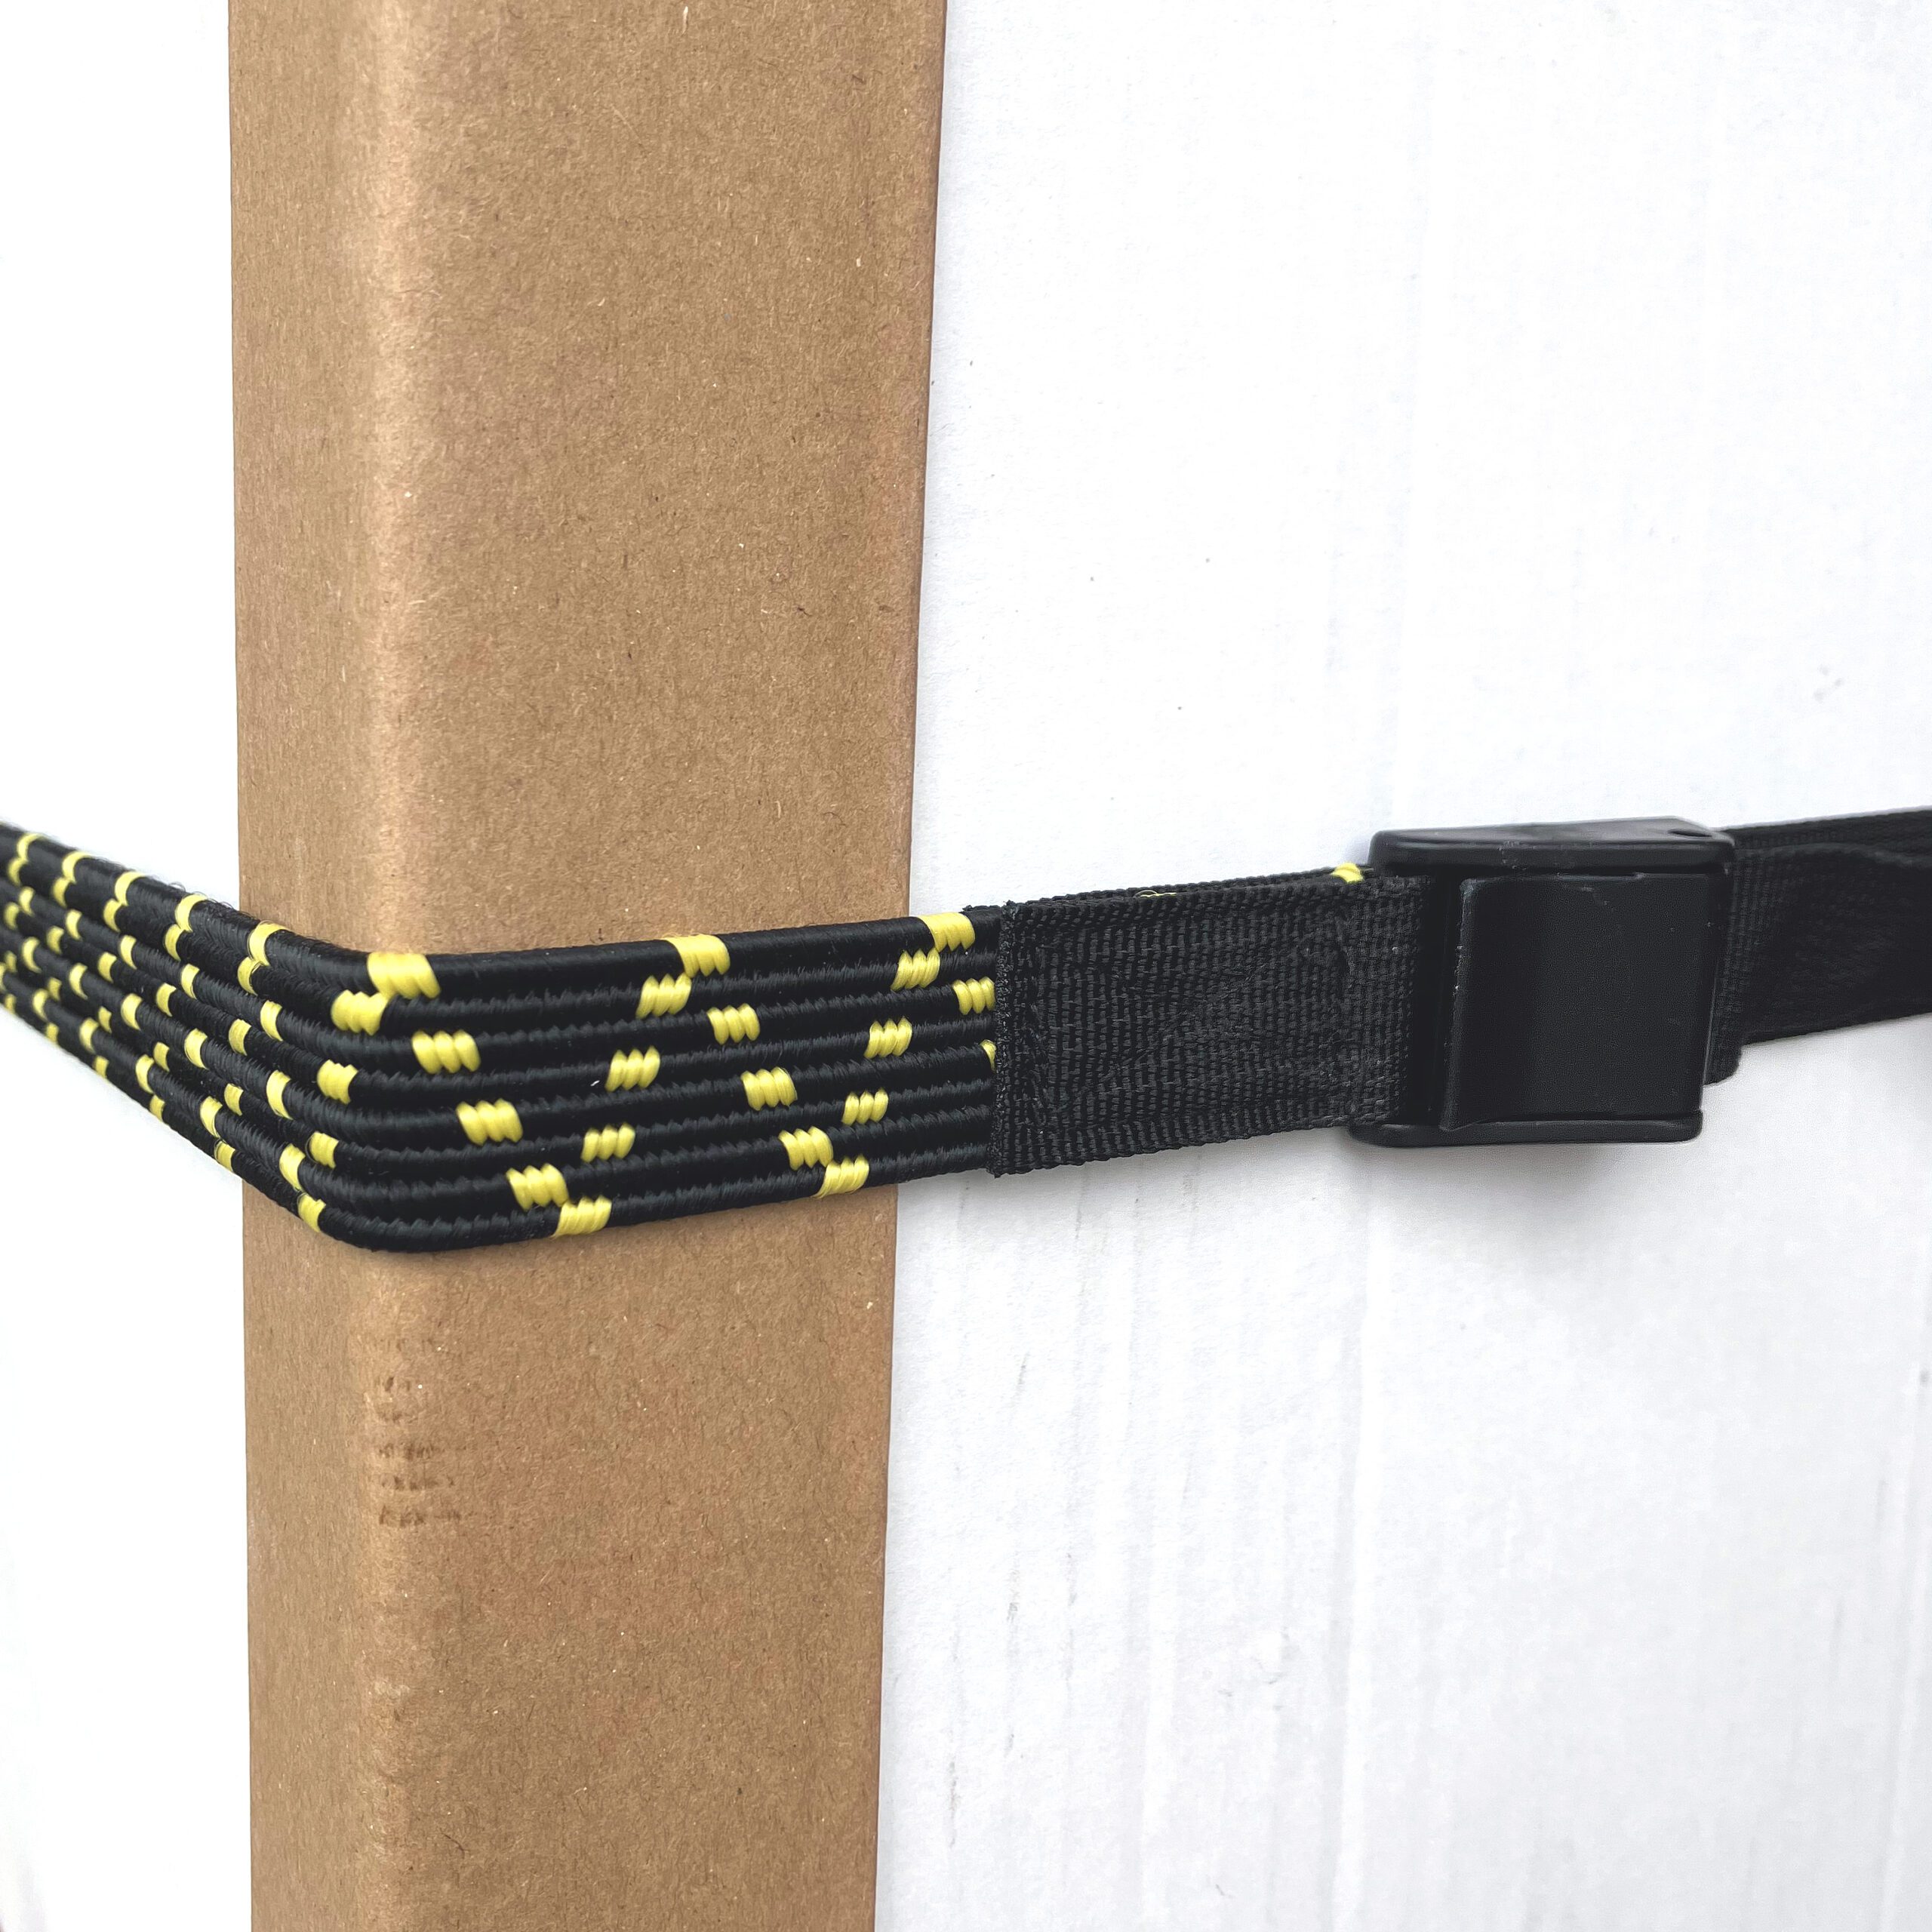 Elastic logistic straps